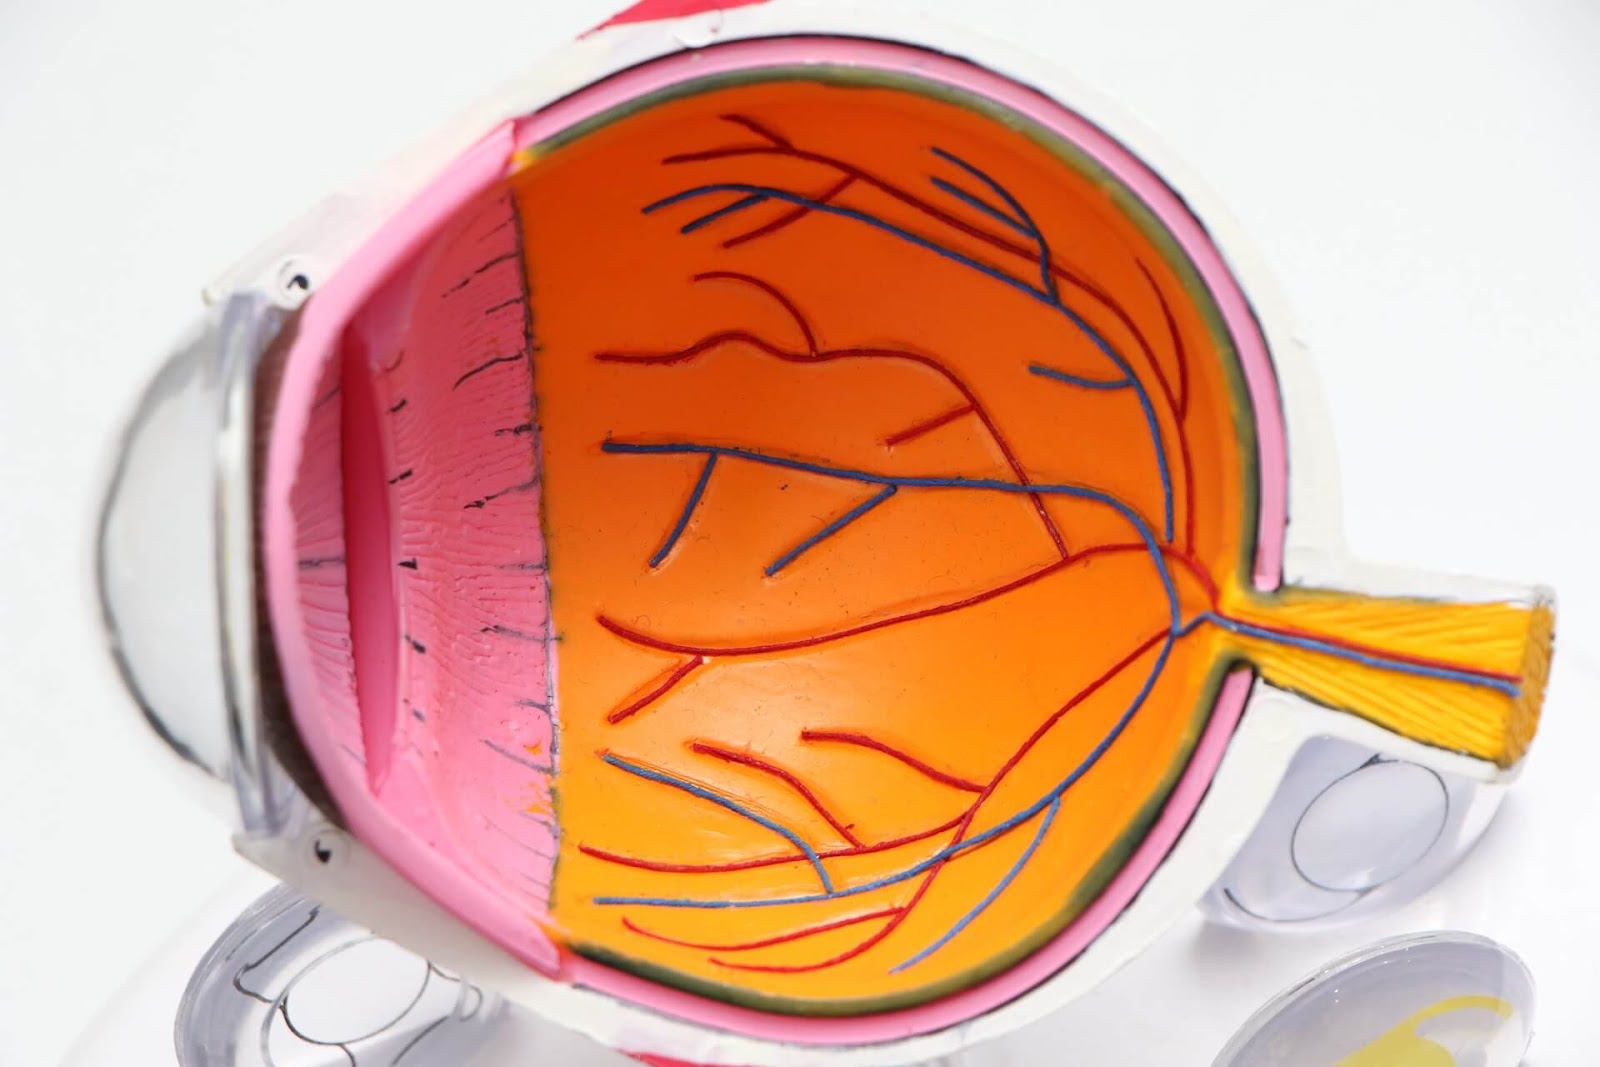 Episclerita nodulară, anatomia ochiului și care structură a acestuia este afectată în episclerită, optimarvisioncare.ro